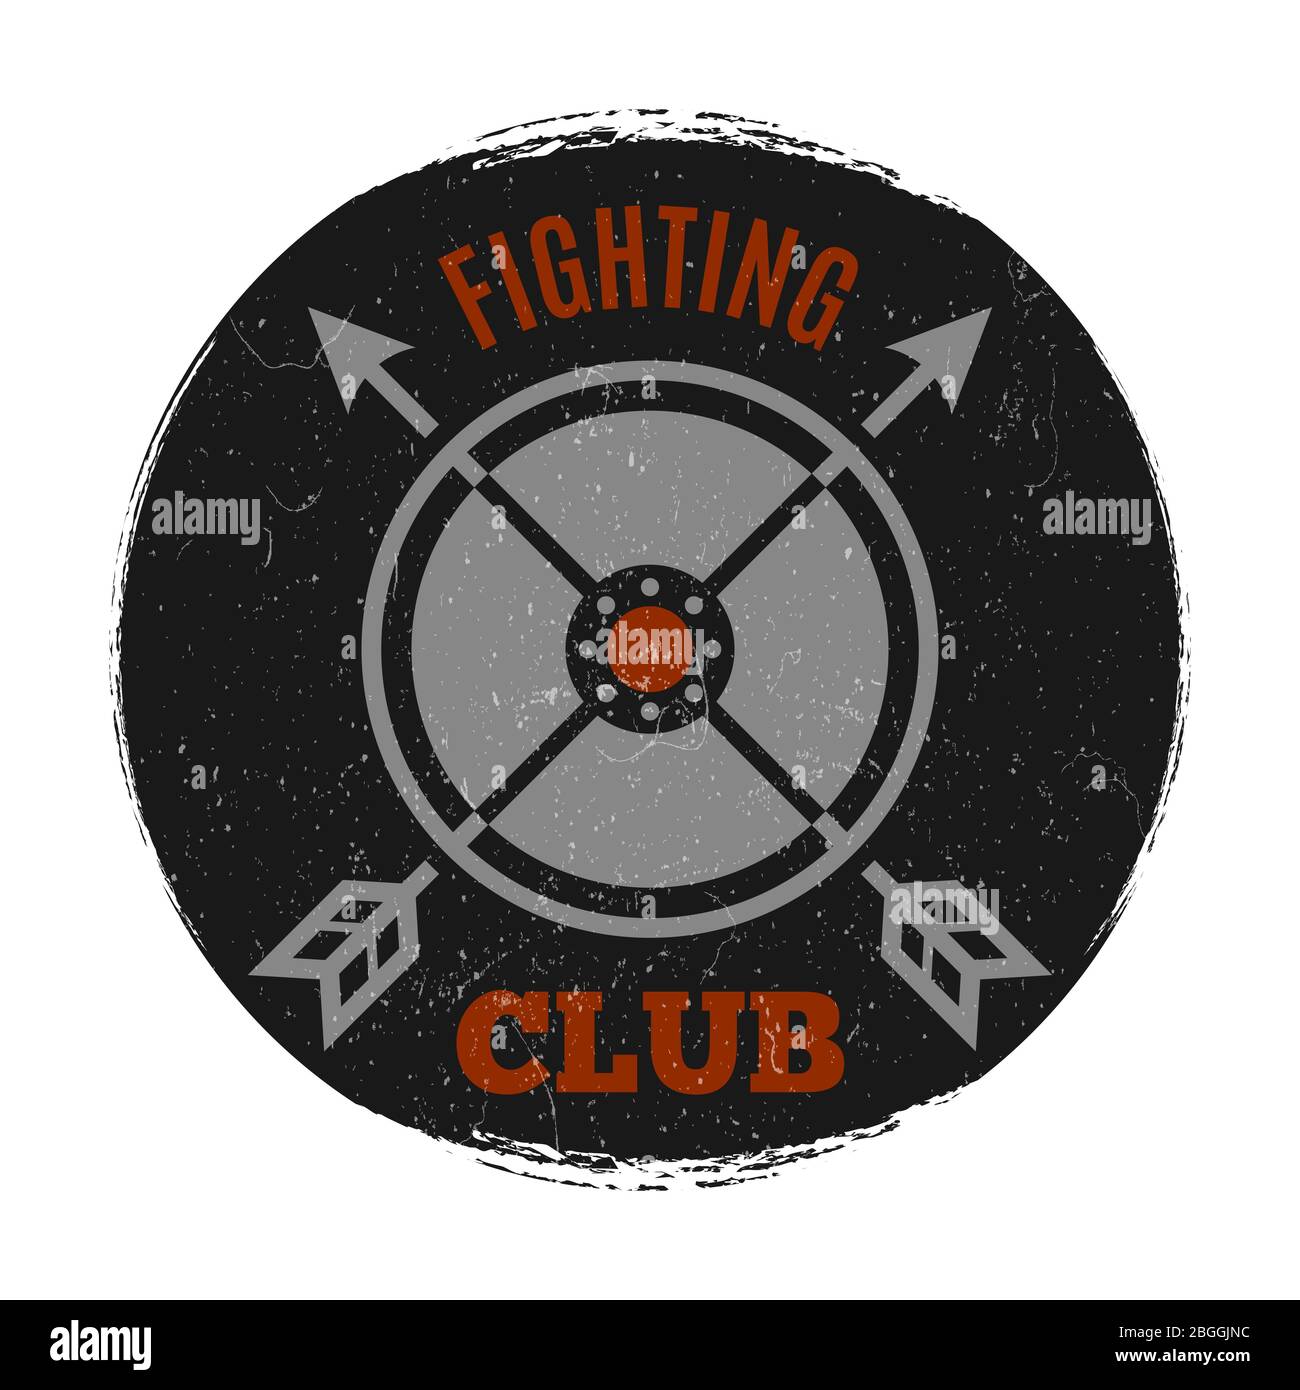 Etichetta club di combattimento con effetto grunge vintage. Freccia a croce, illustrazione vettoriale Illustrazione Vettoriale